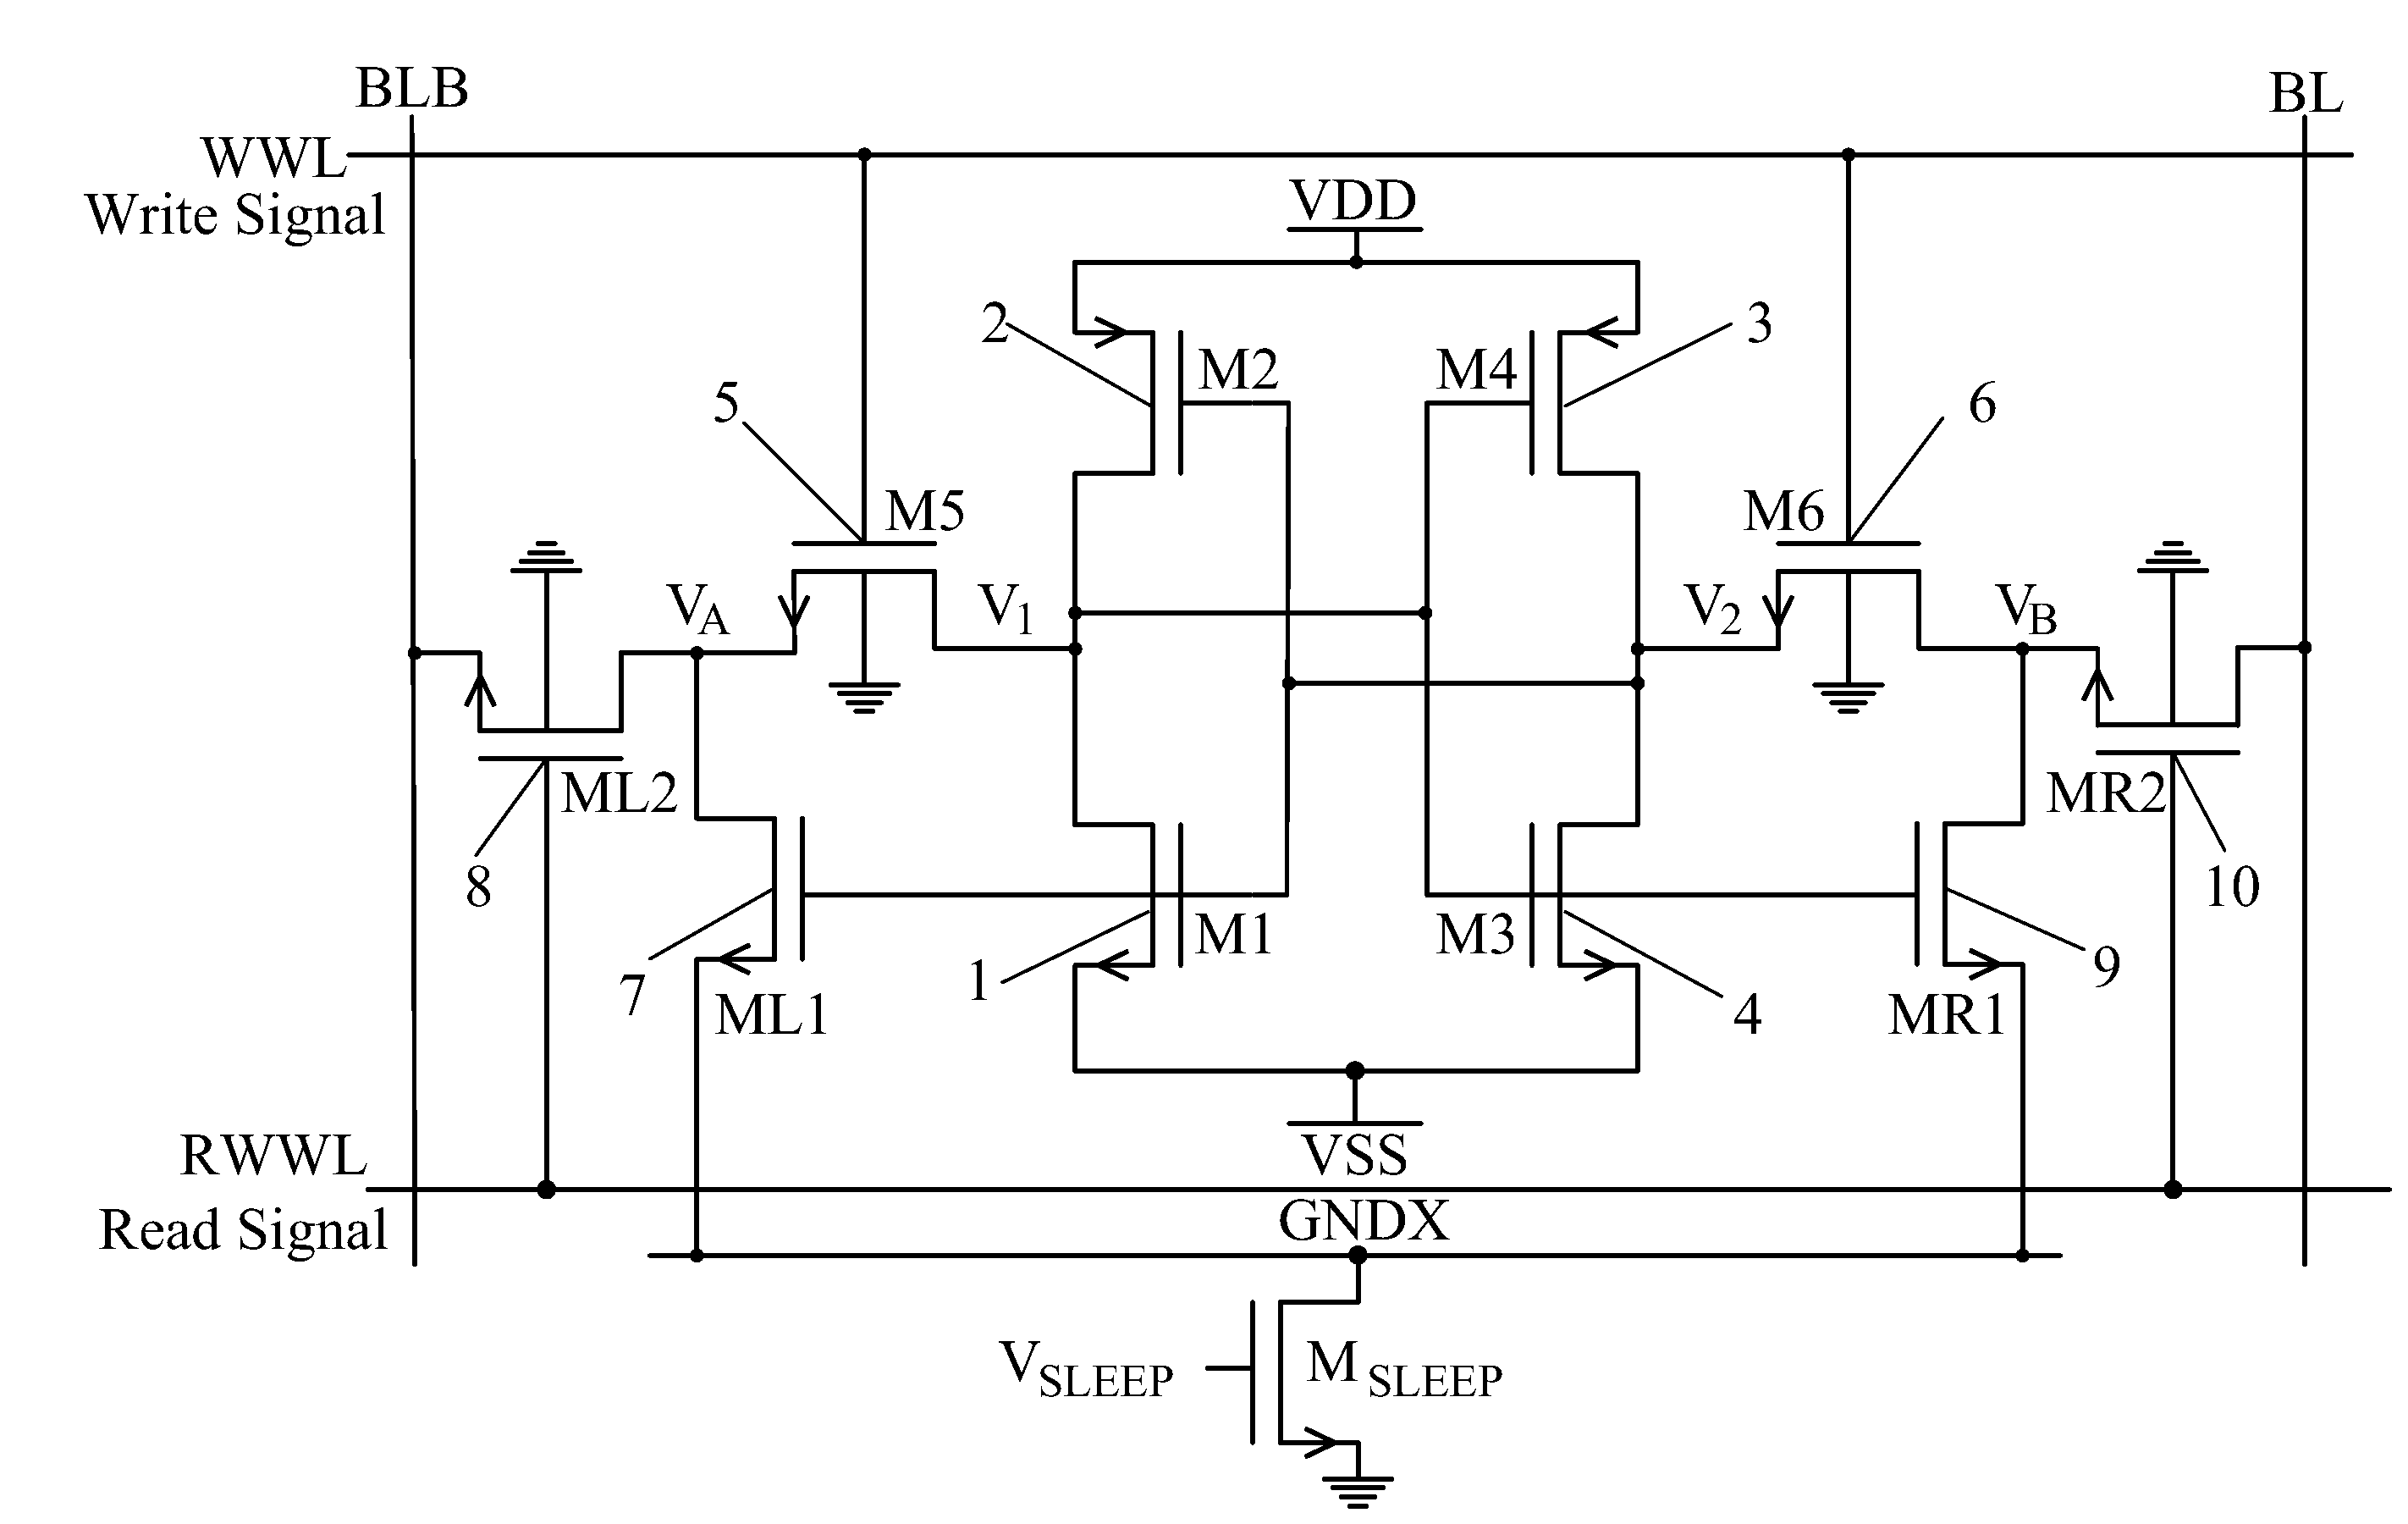 Ten-transistor static random access memory architecture